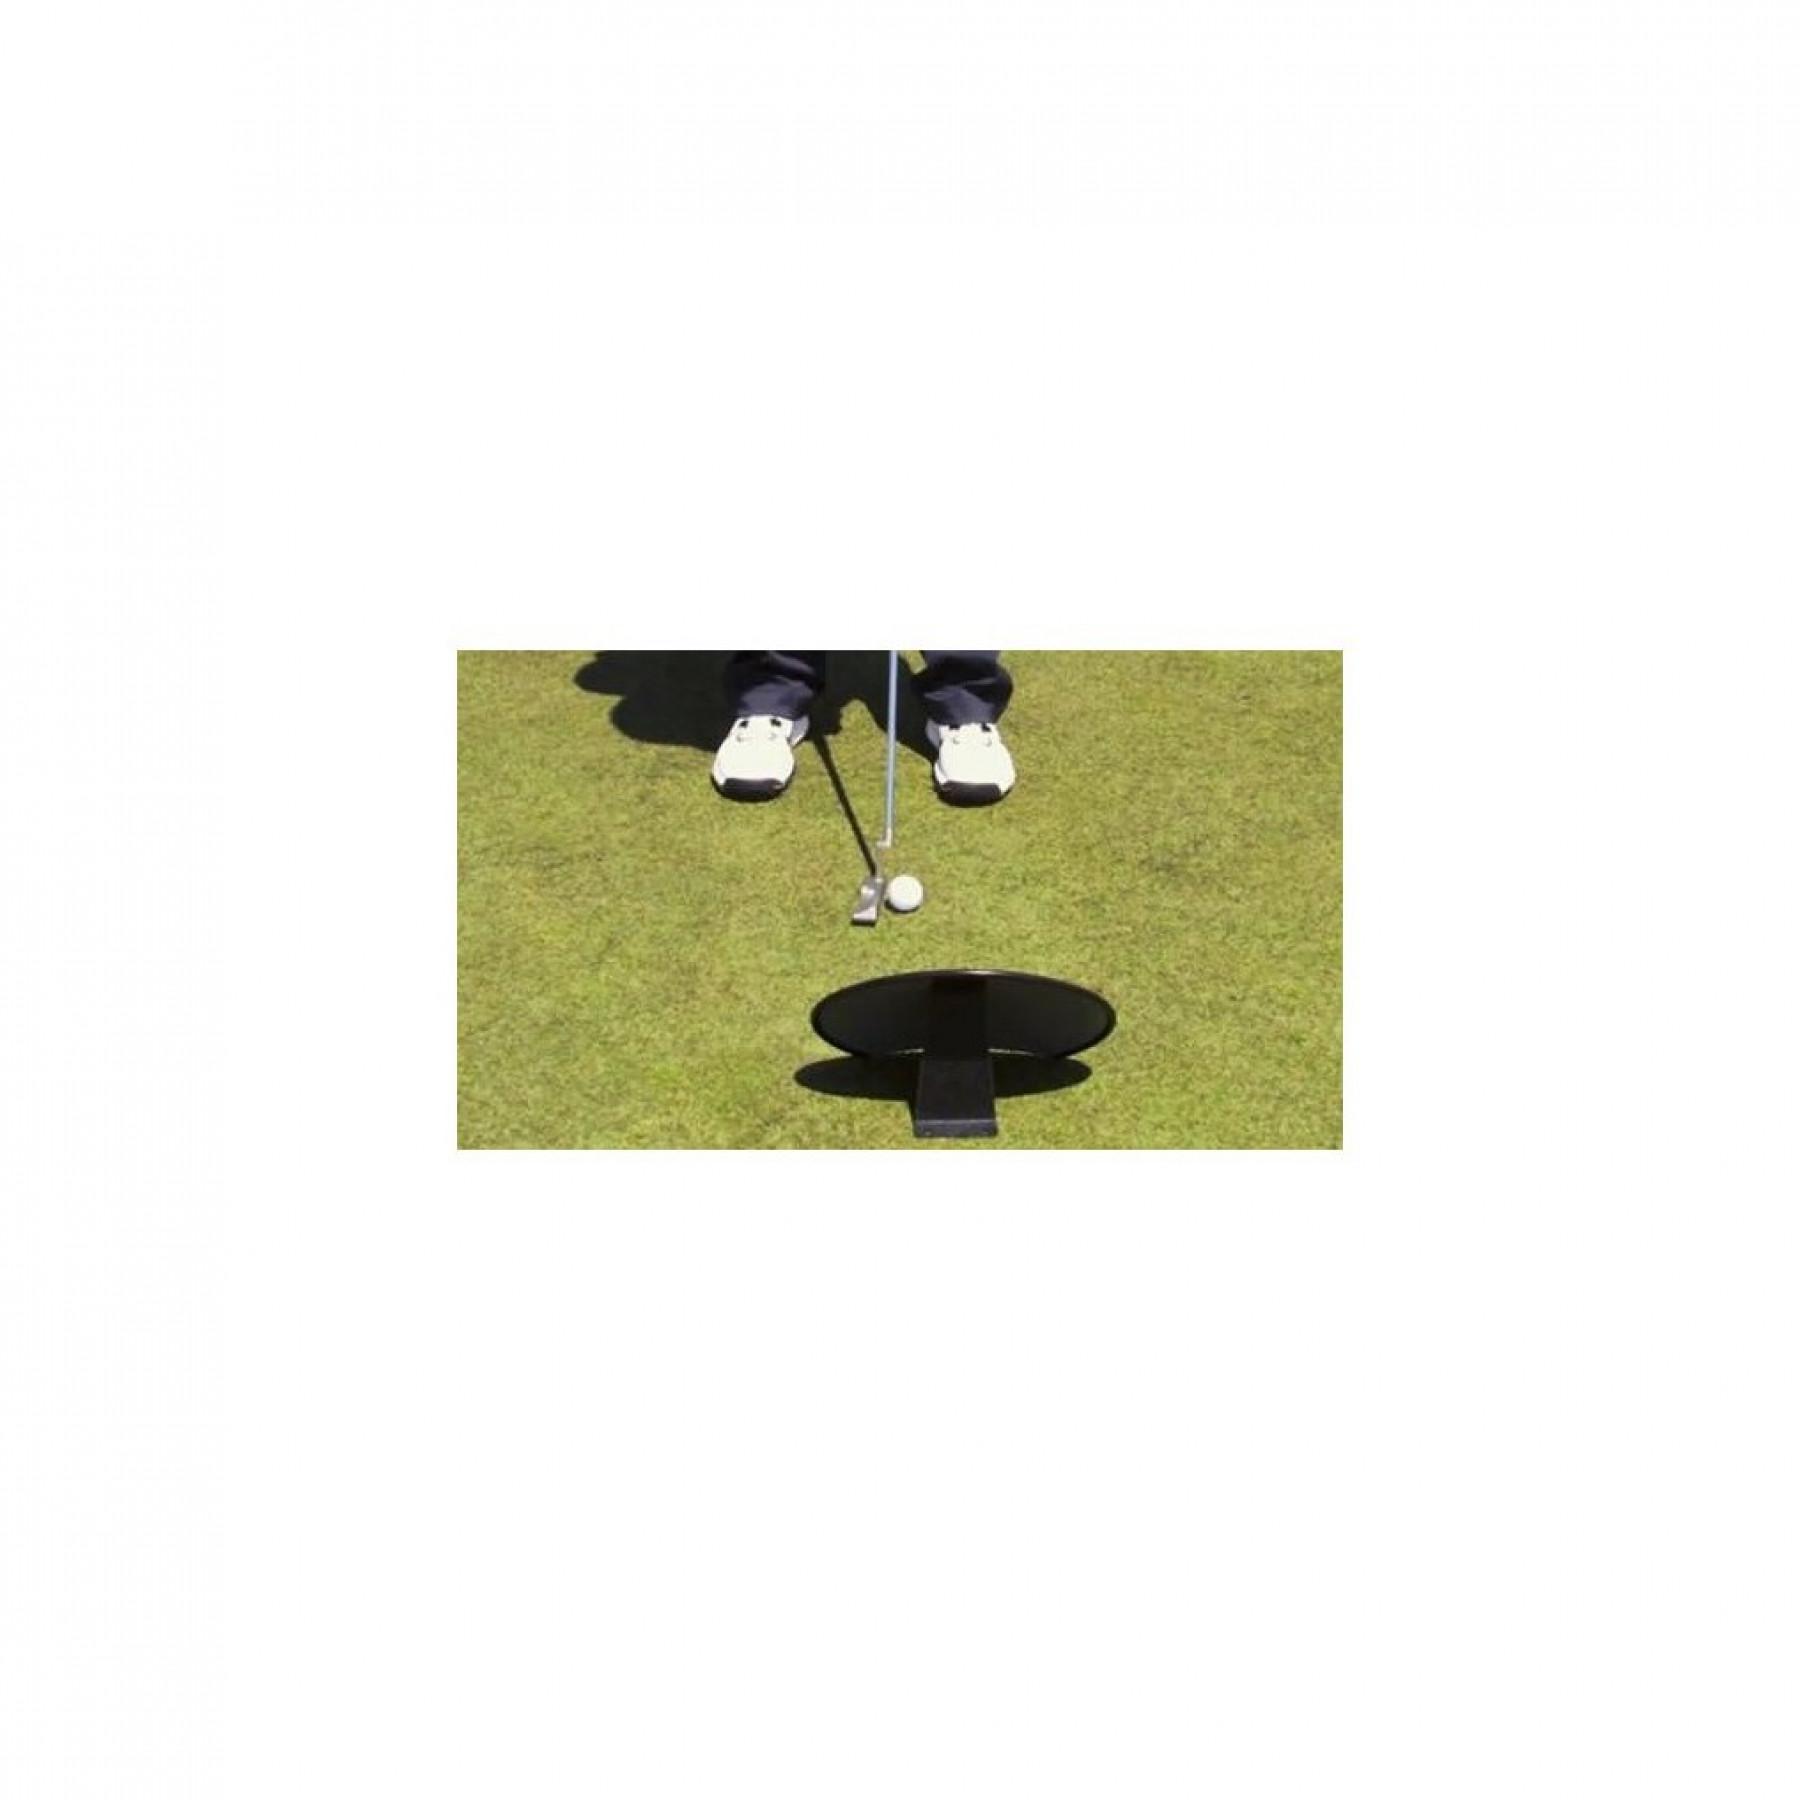 Specchio d'allenamento a 360 gradi EyeLine Golf